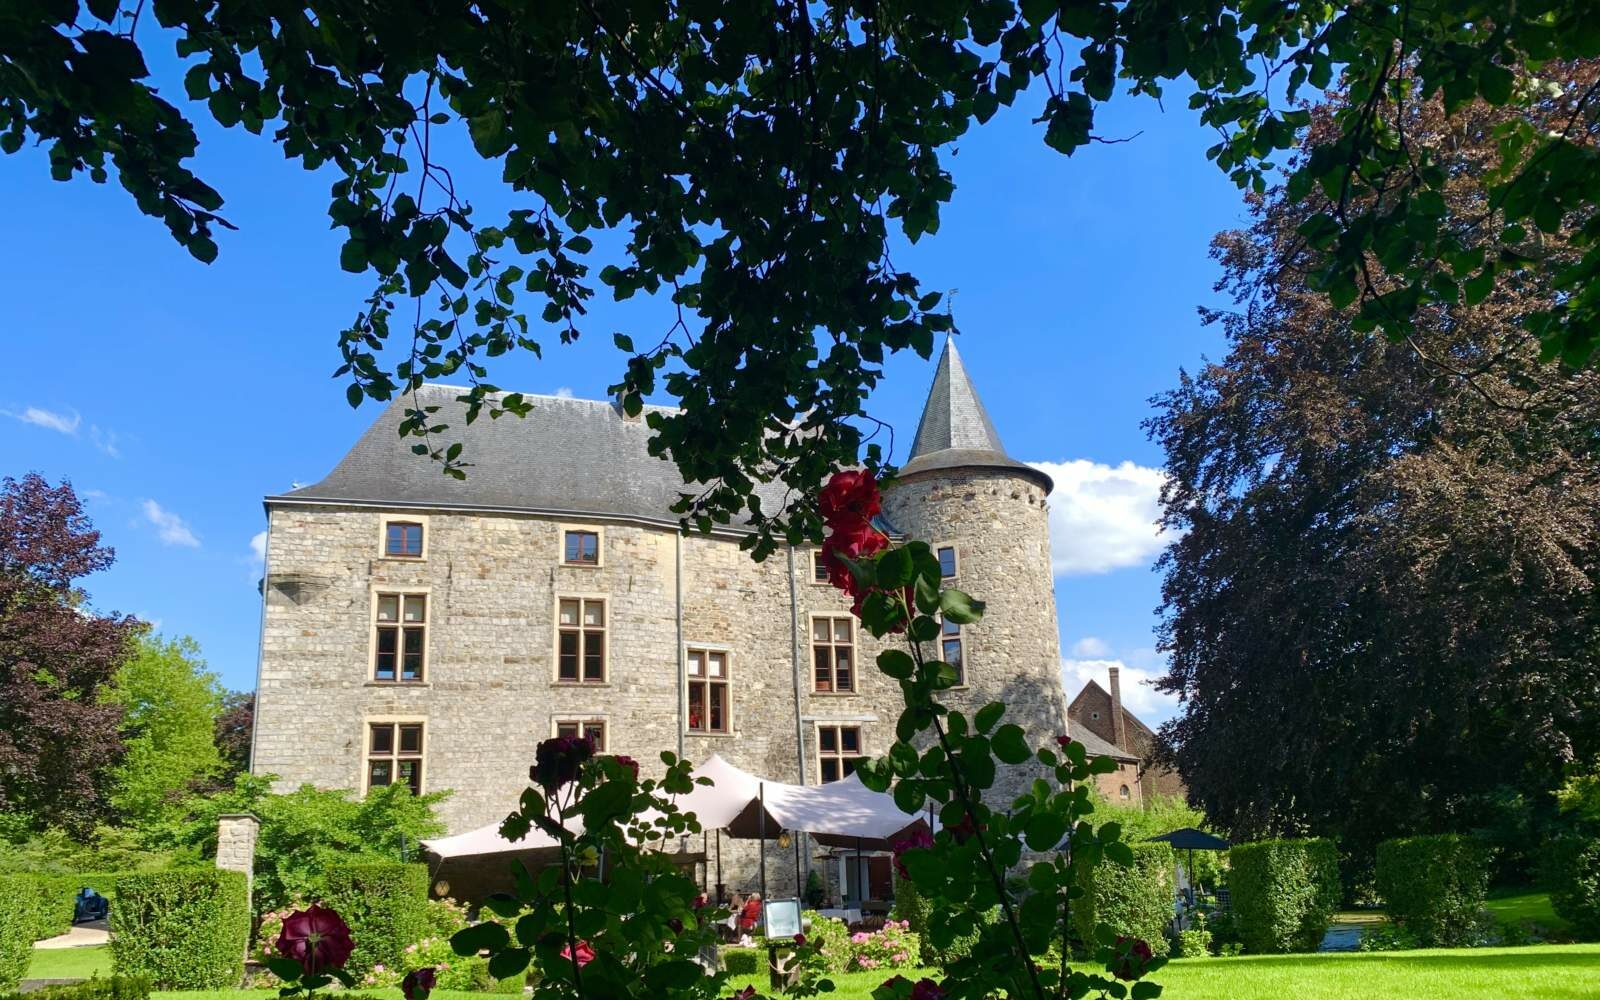 Maastricht und Chateau Wittem… ein Wochenende wie bei Rosamunde Pilcher